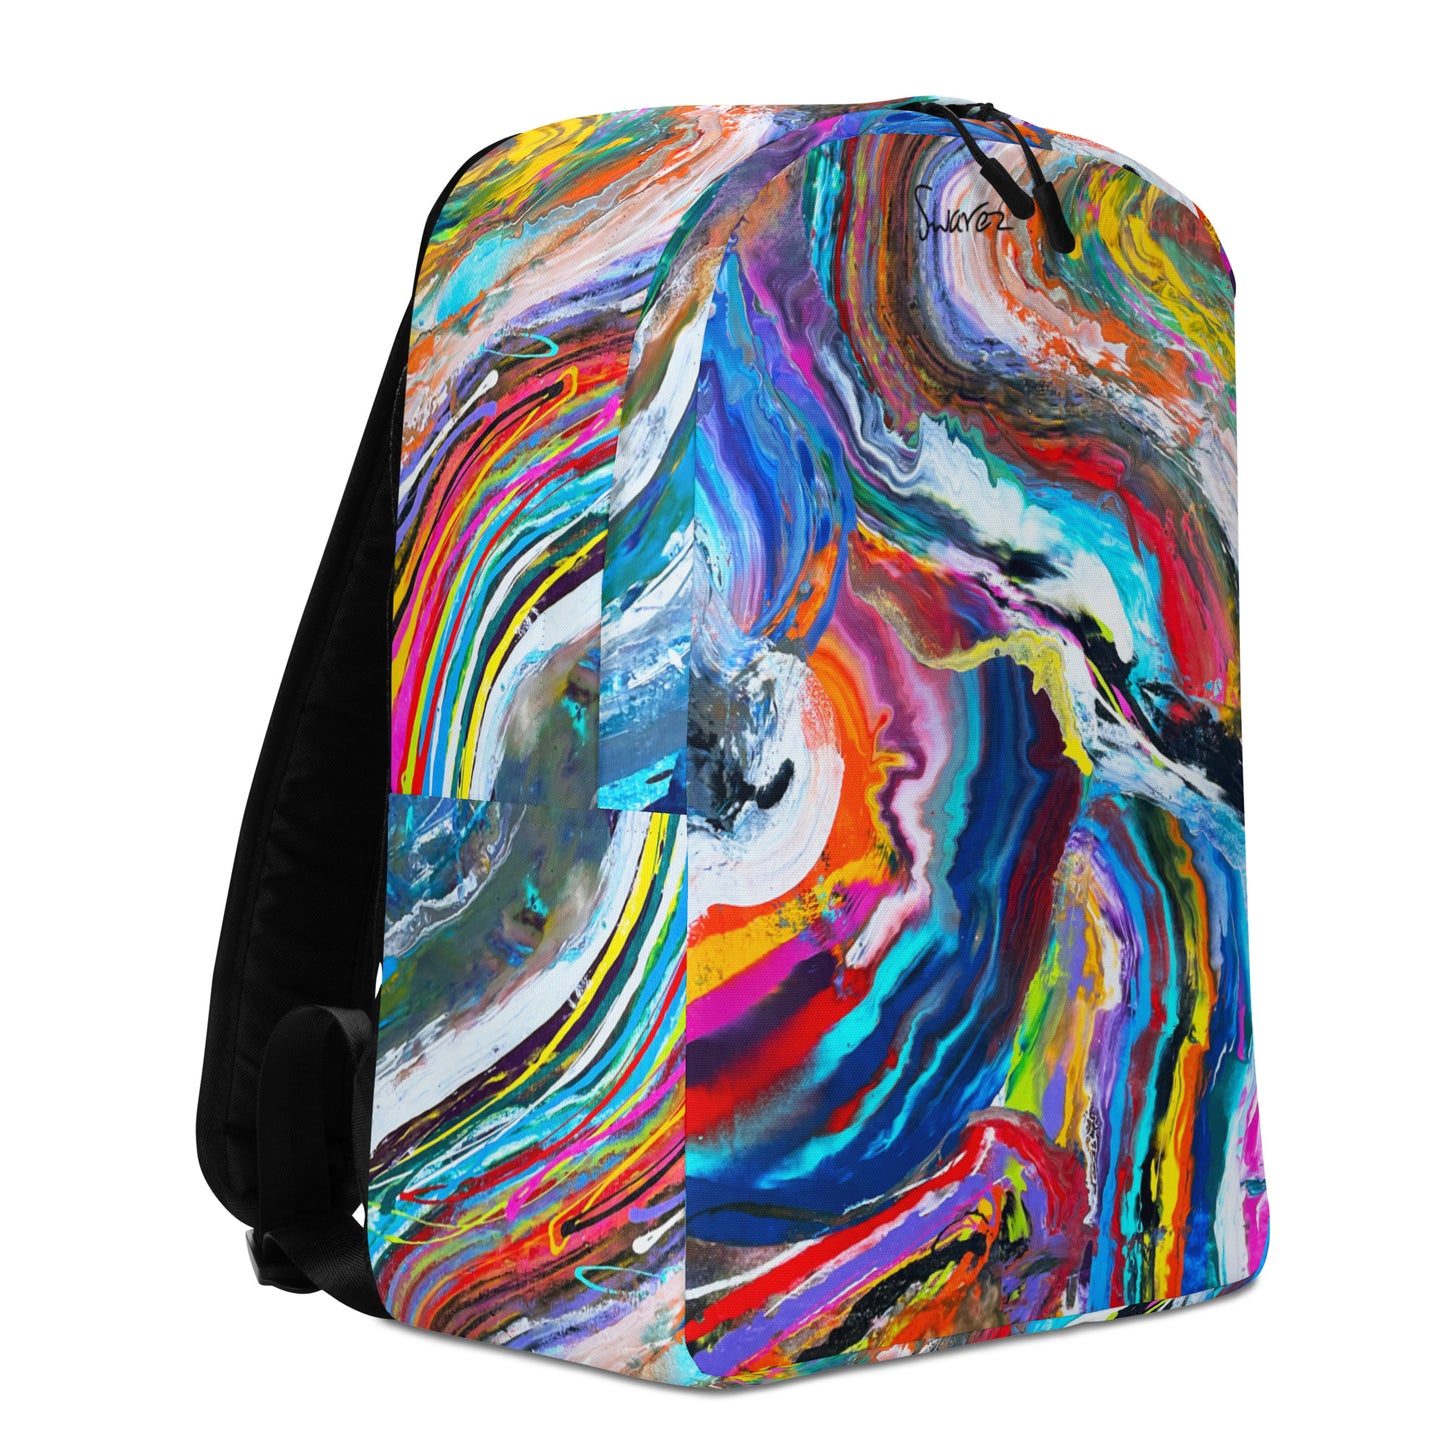 Minimalist Backpack - Rainbow Wave design